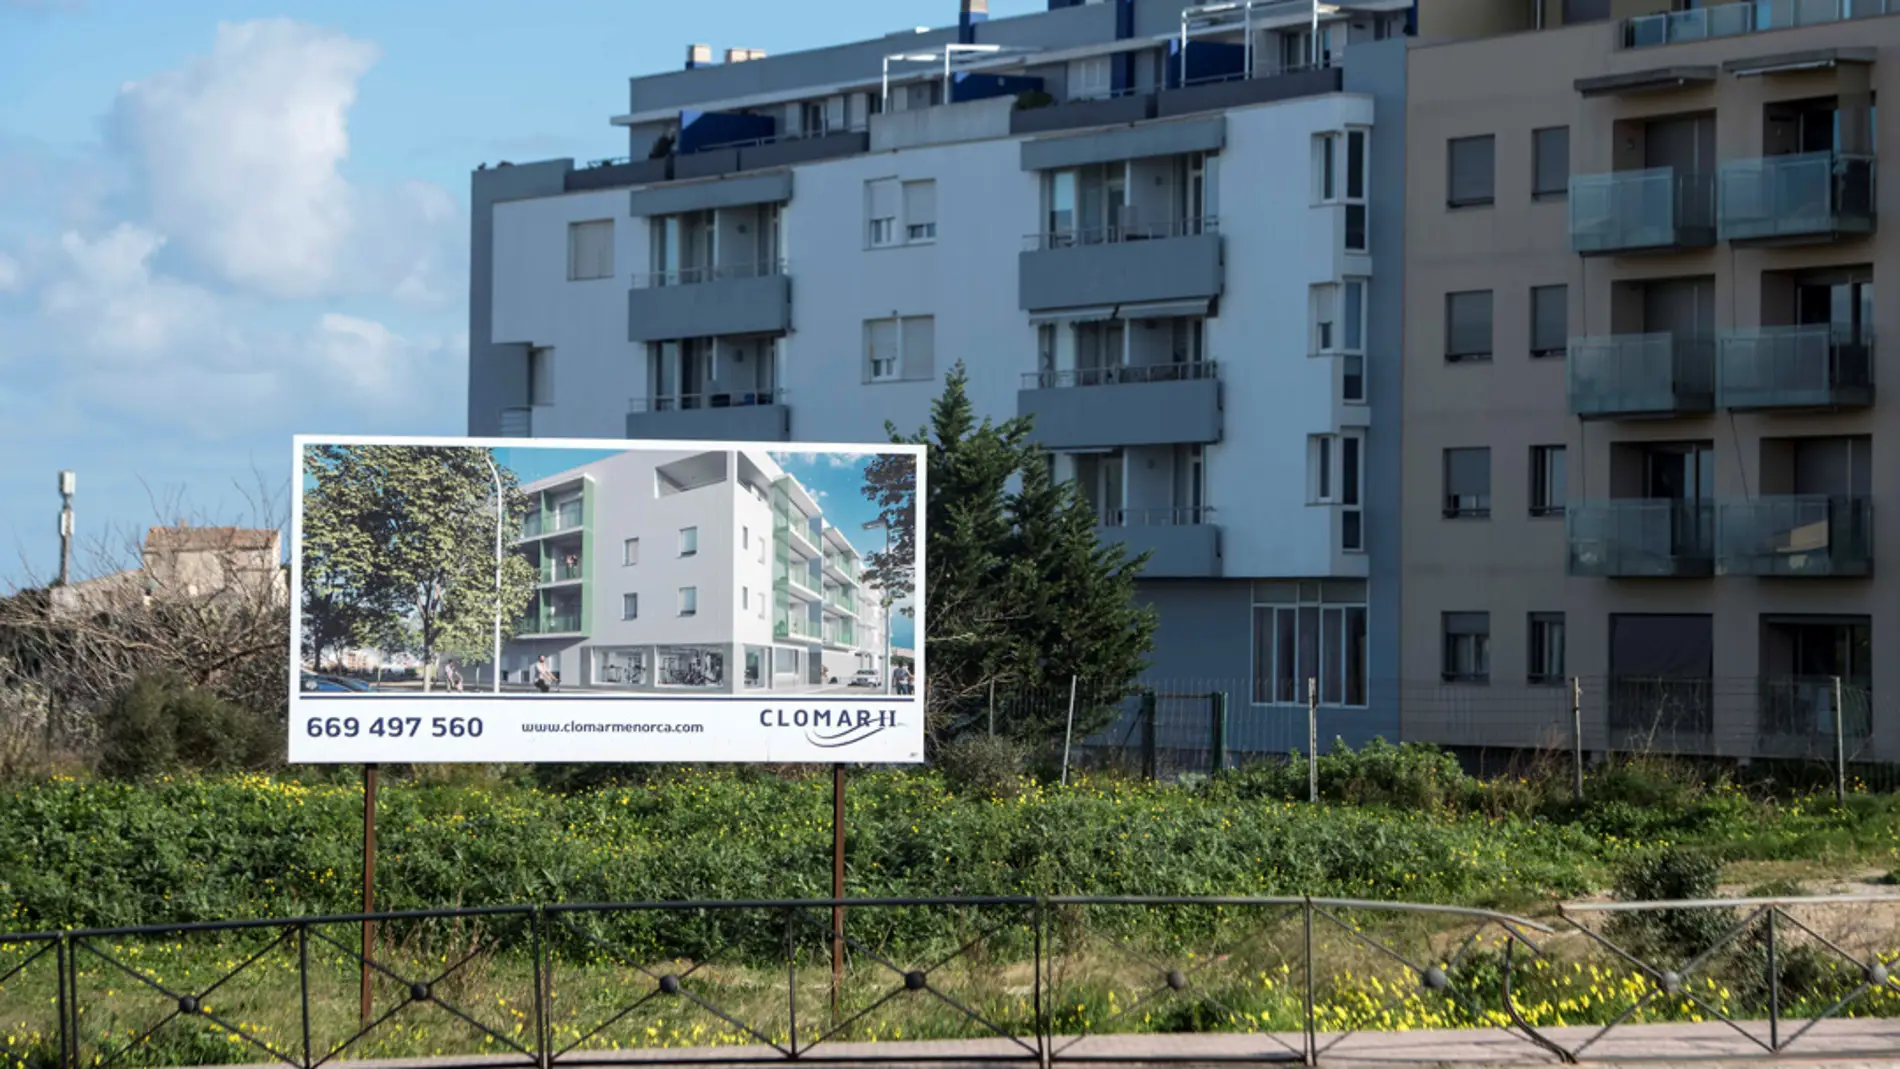 Promoción de viviendas en Mahón/ EFE/David Arquimbau Sintes